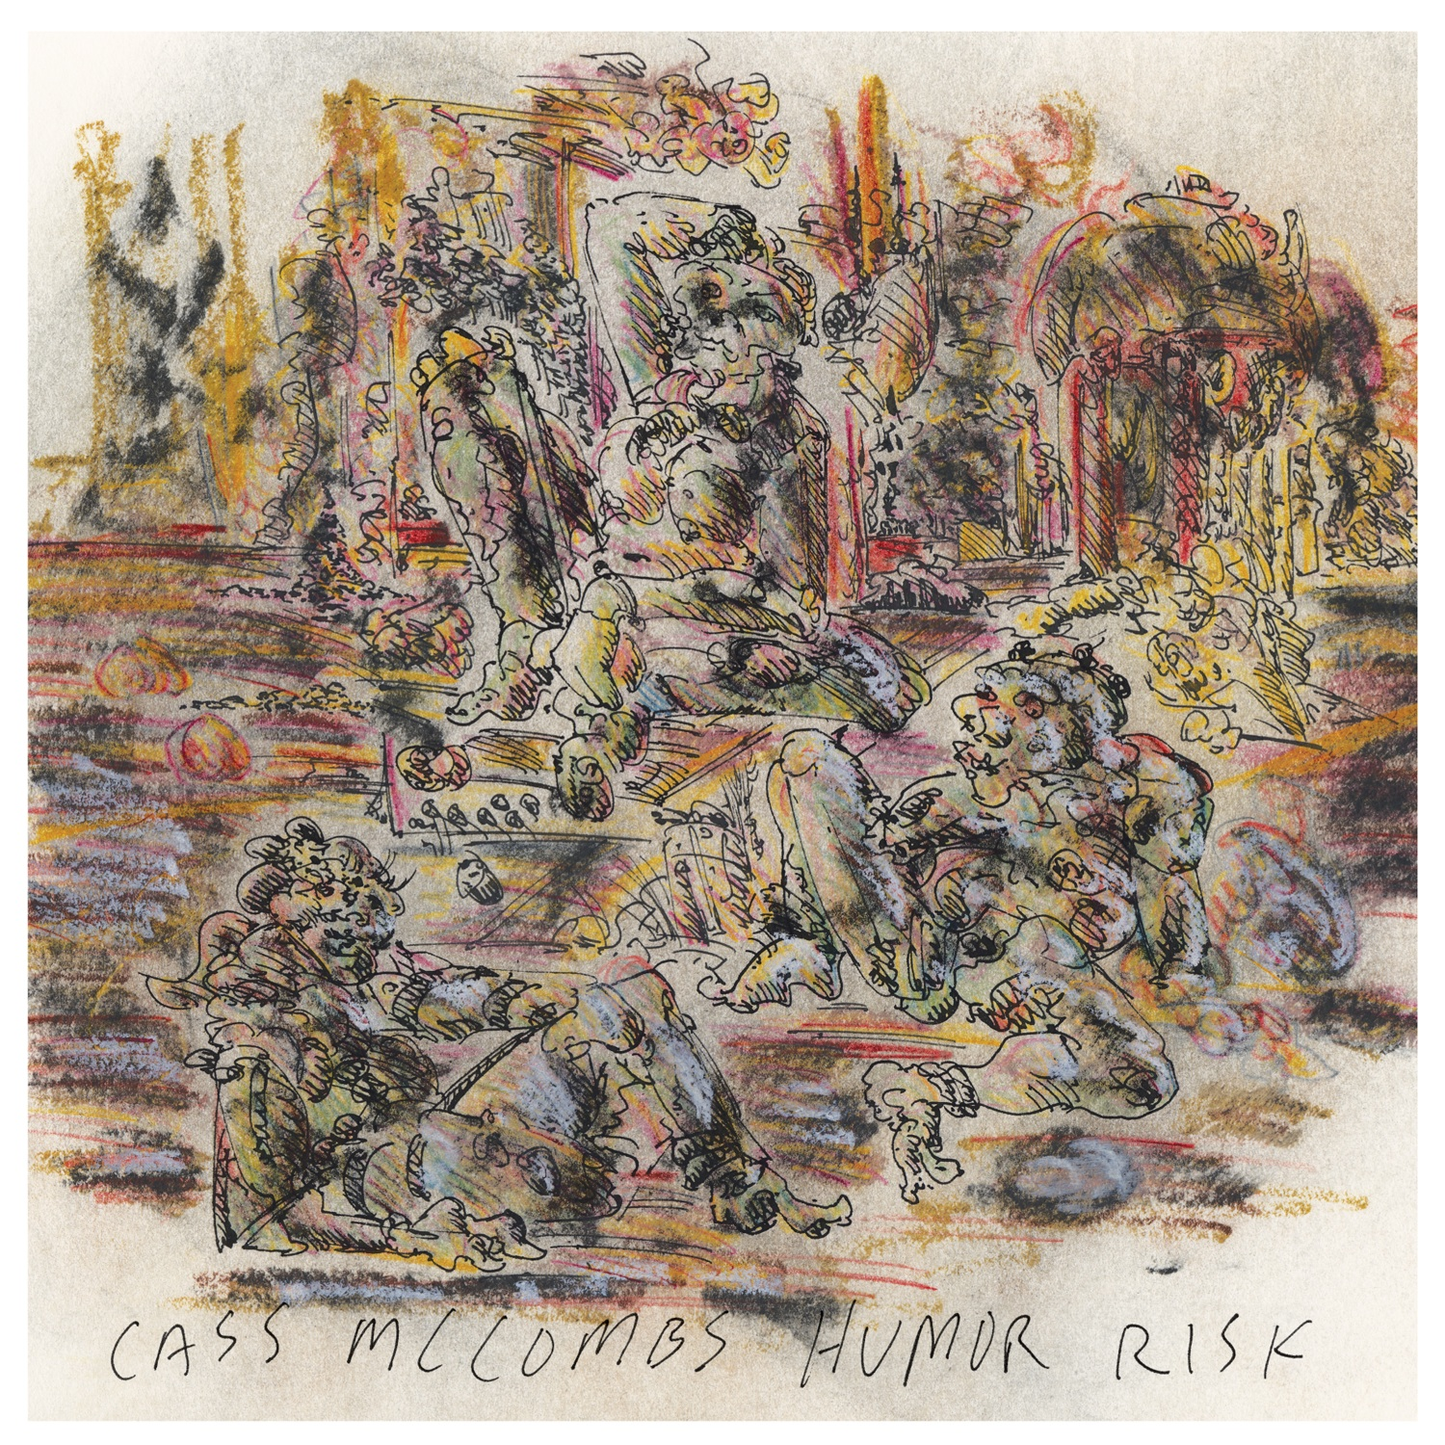 Cass Mccombs - Humor Risk (Vinyl)